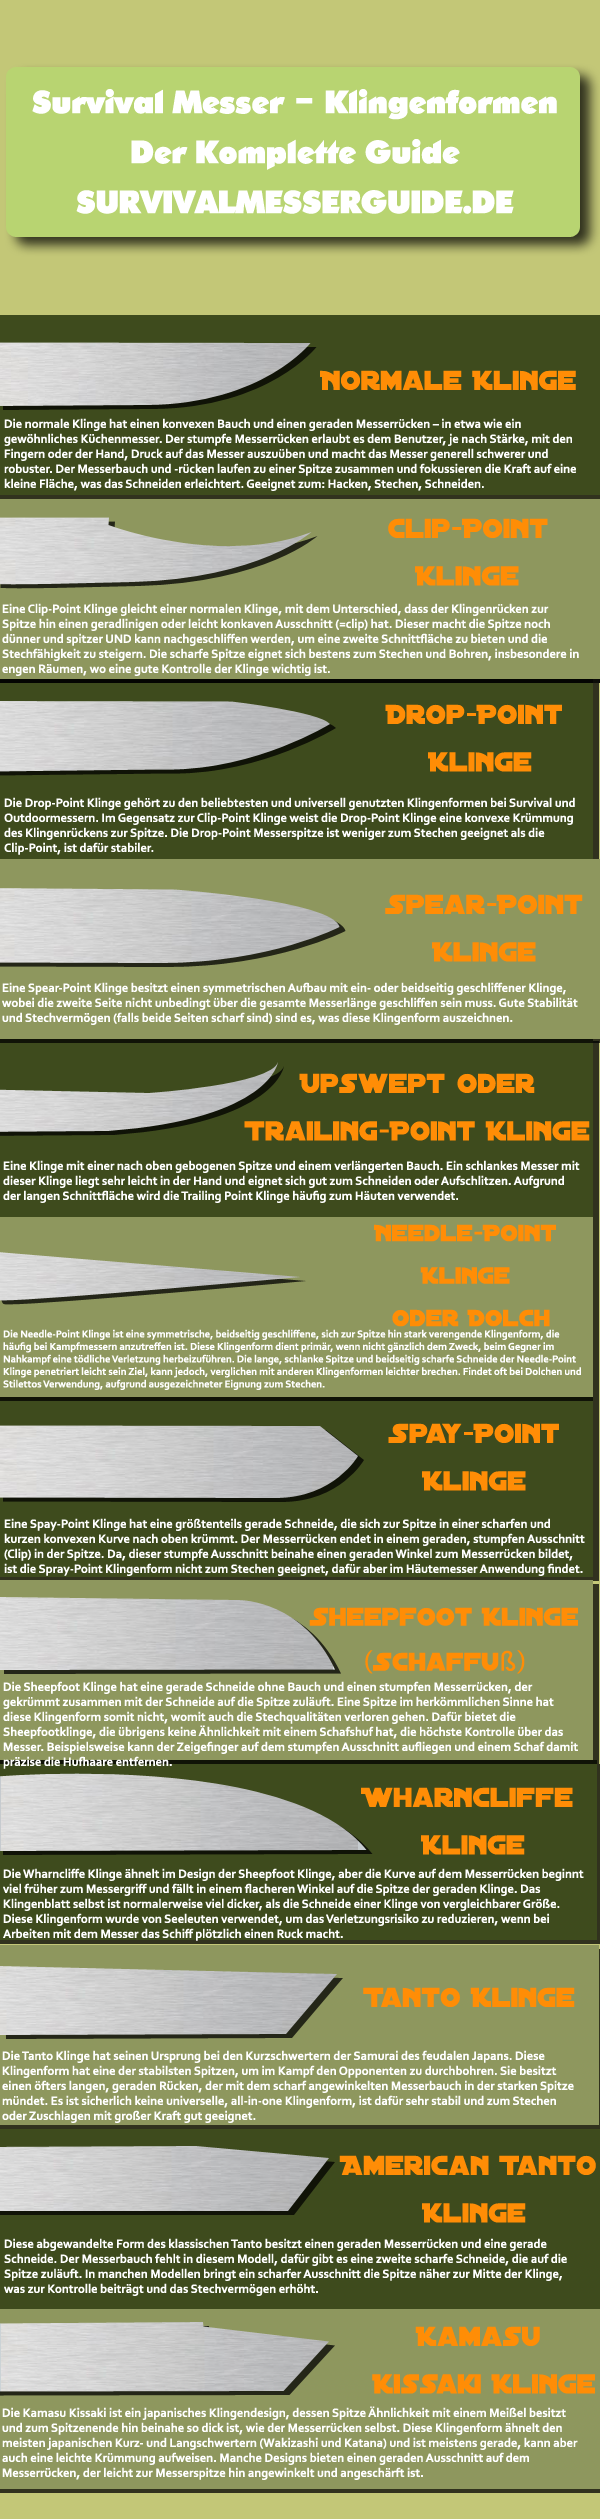 Klingenformen von Messern - Survivalmesserguide.de